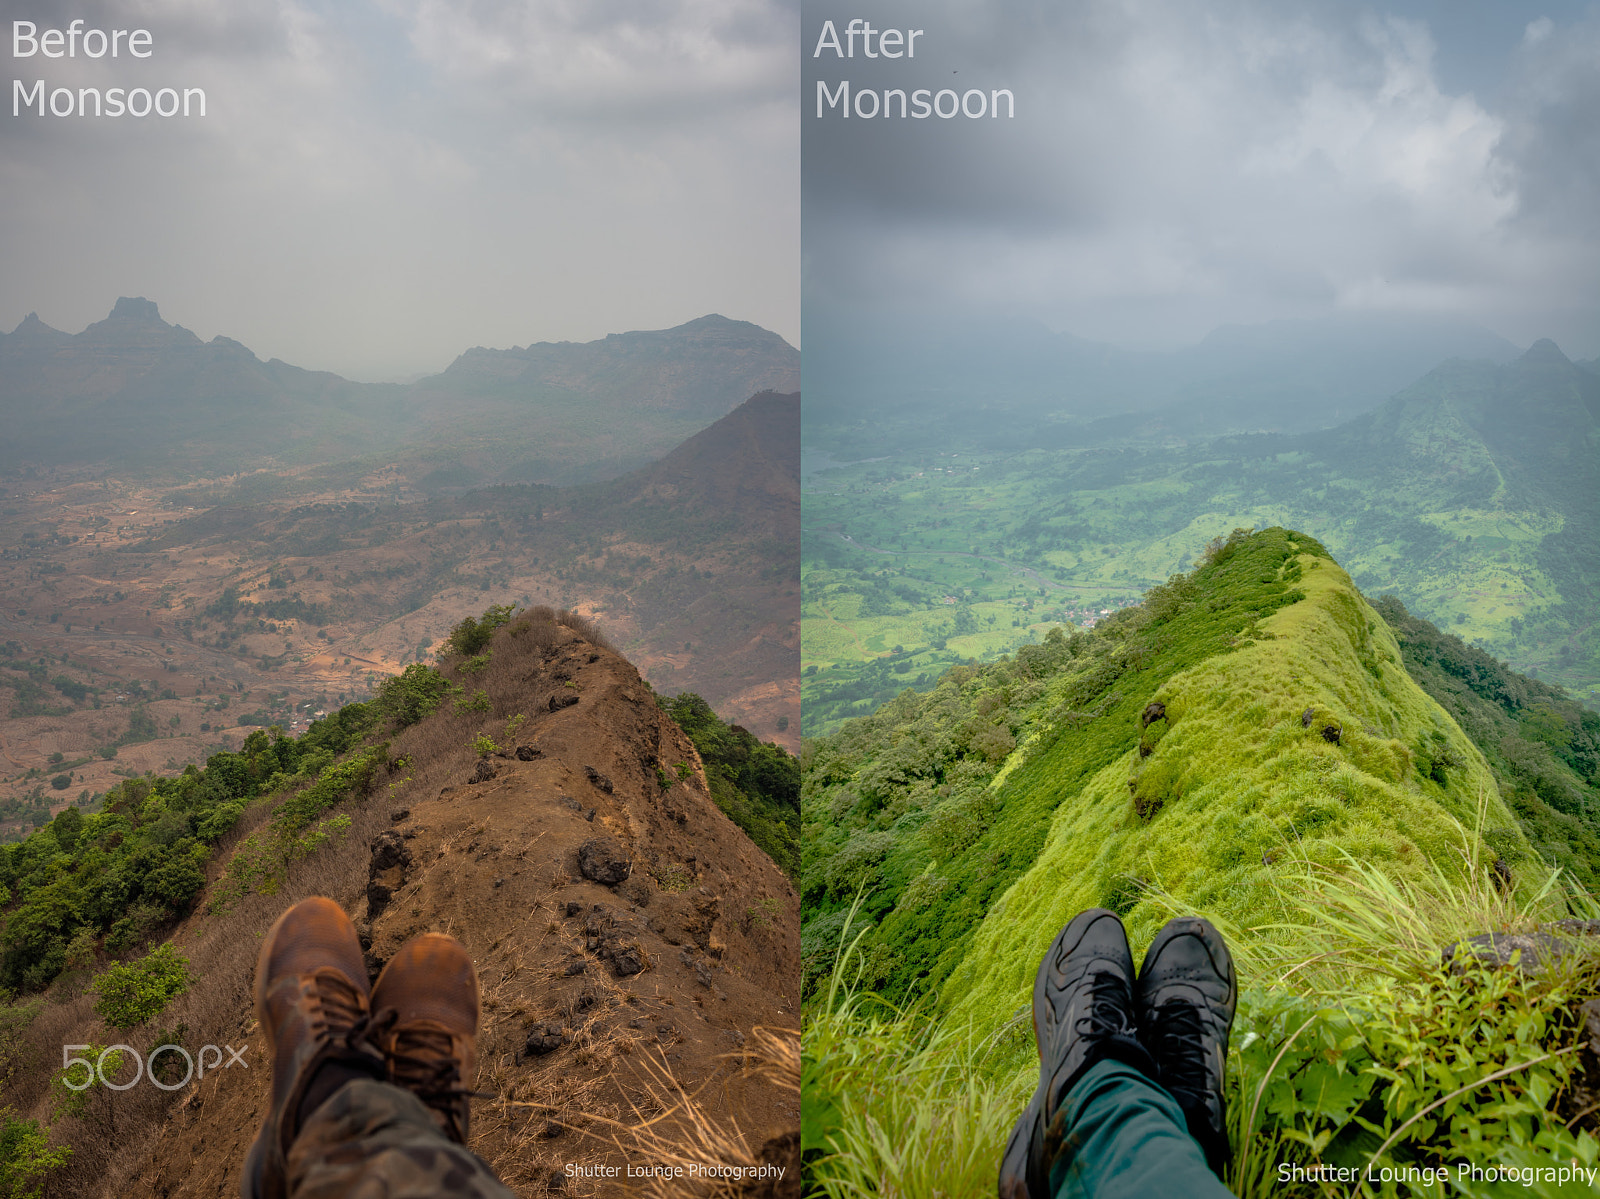 Nikon D750 + AF Zoom-Nikkor 35-70mm f/2.8D sample photo. Before & after monsoon photography